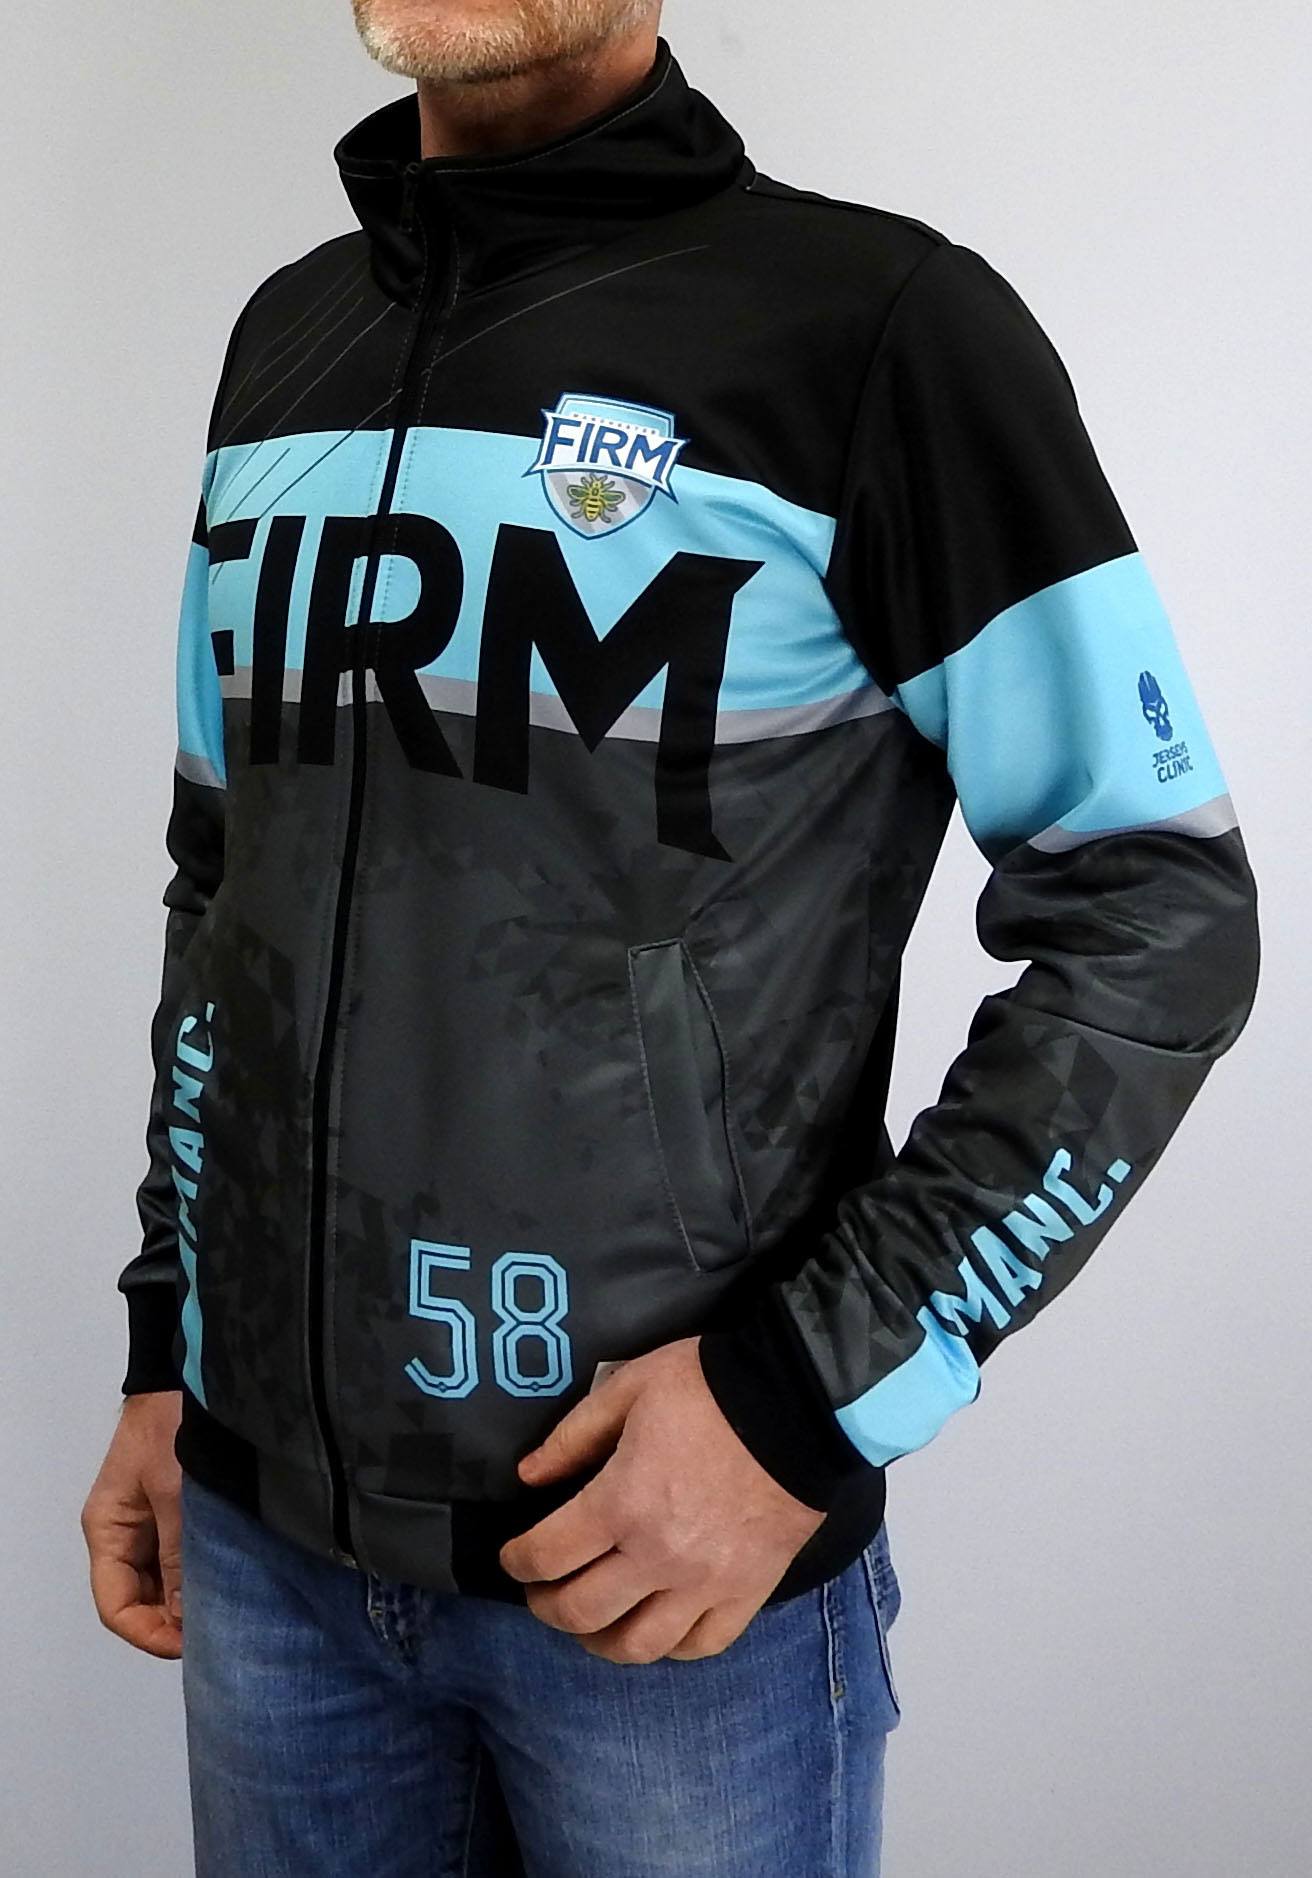 100% Custom Teamwear - Printed Zip Jacket